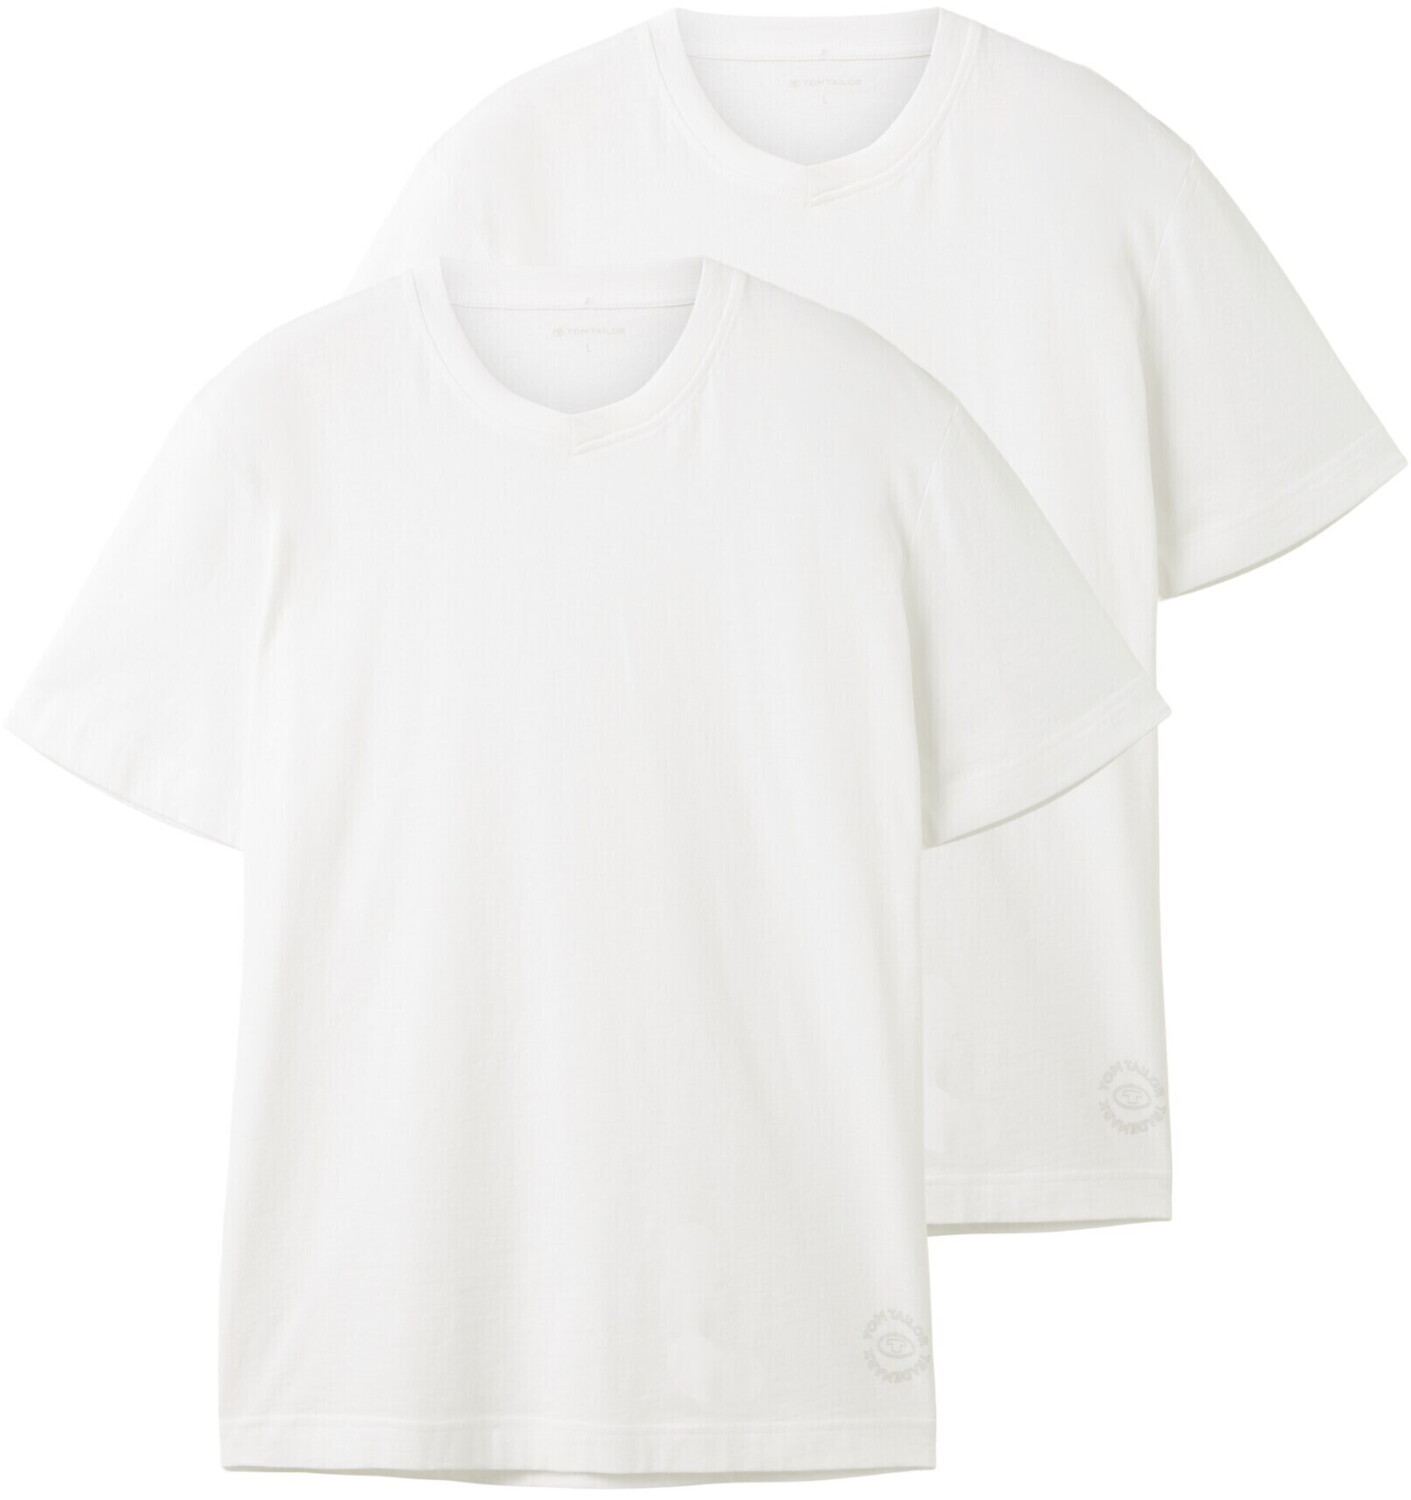 Tom Tailor T-Shirt mit V-Ausschnitt im Doppelpack (1037738-20000) white ab  19,99 € | Preisvergleich bei